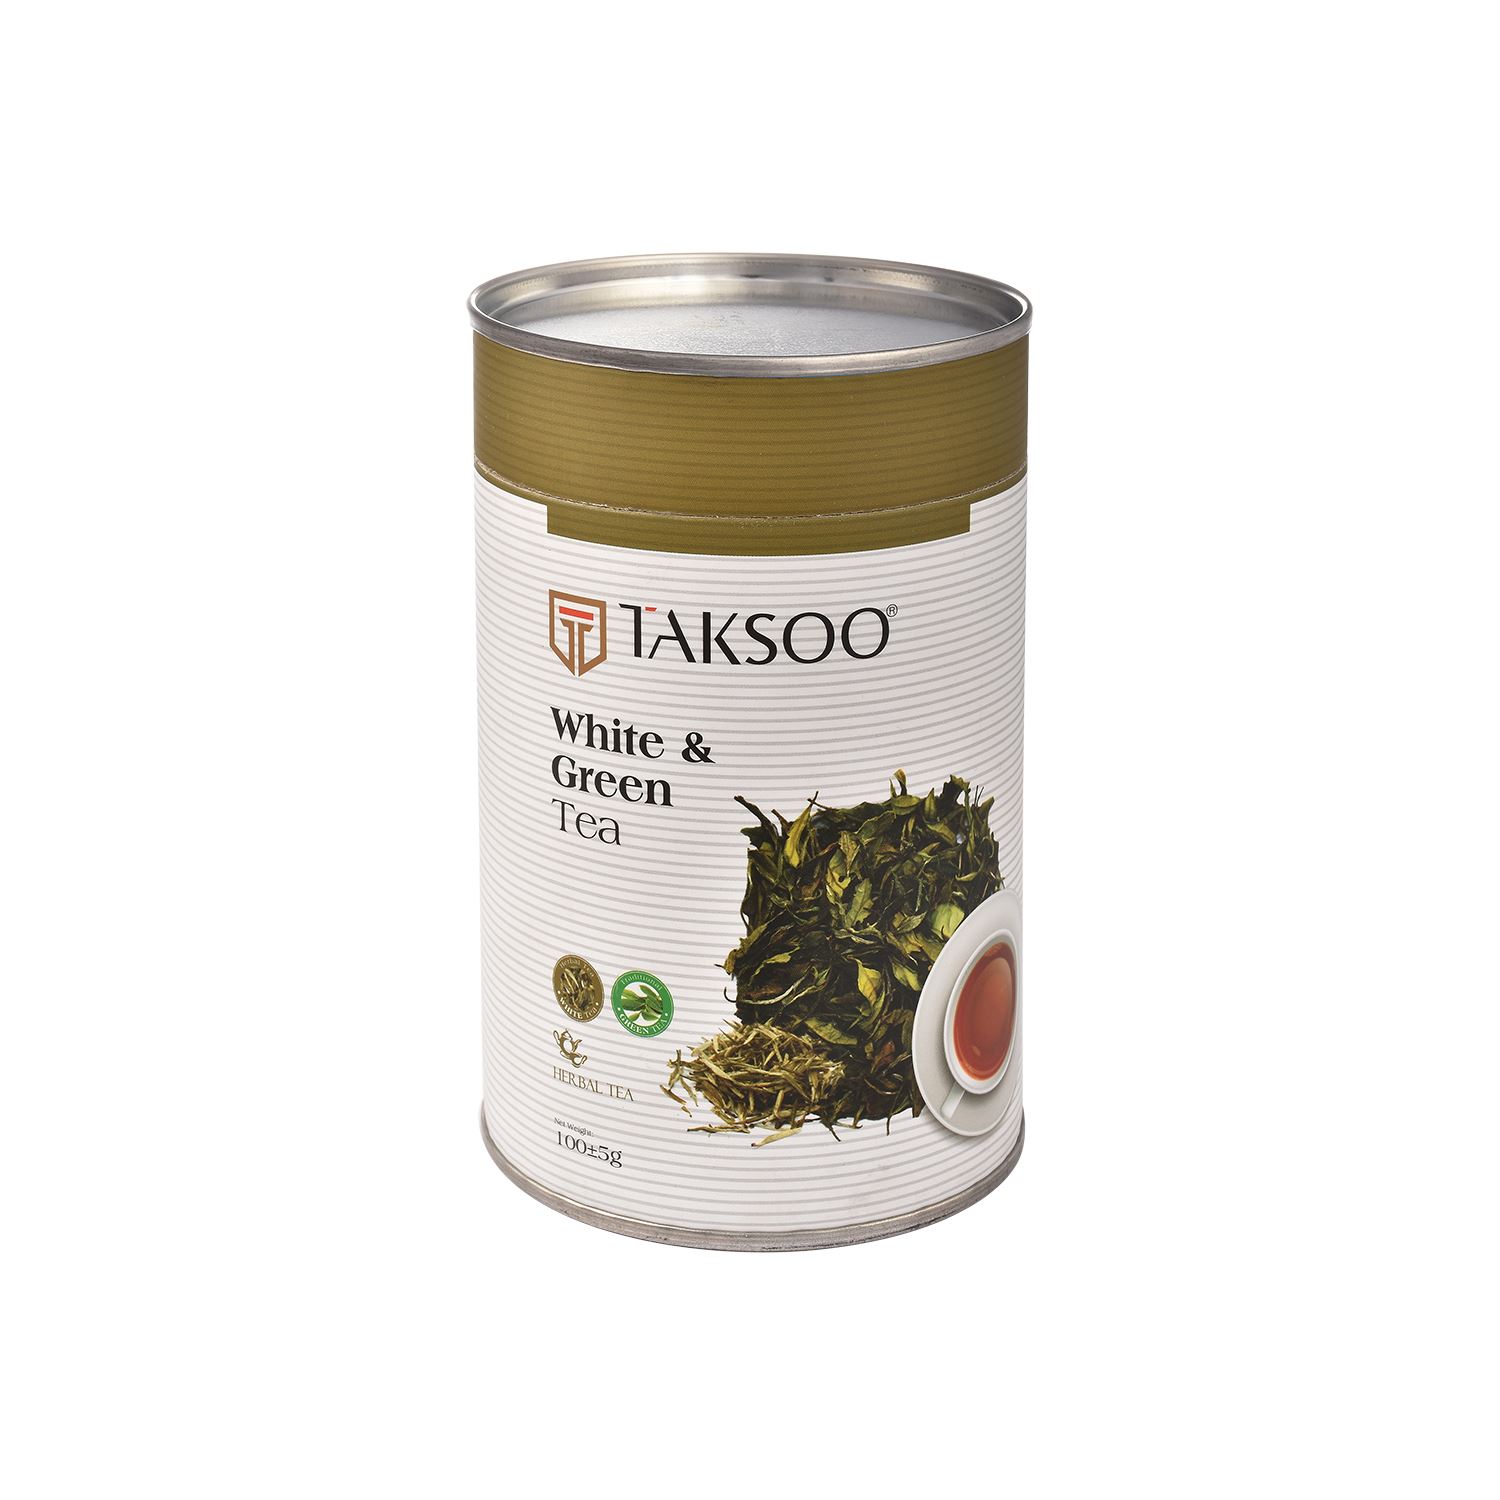 چای سبز و سفید تکسو - 100 گرم